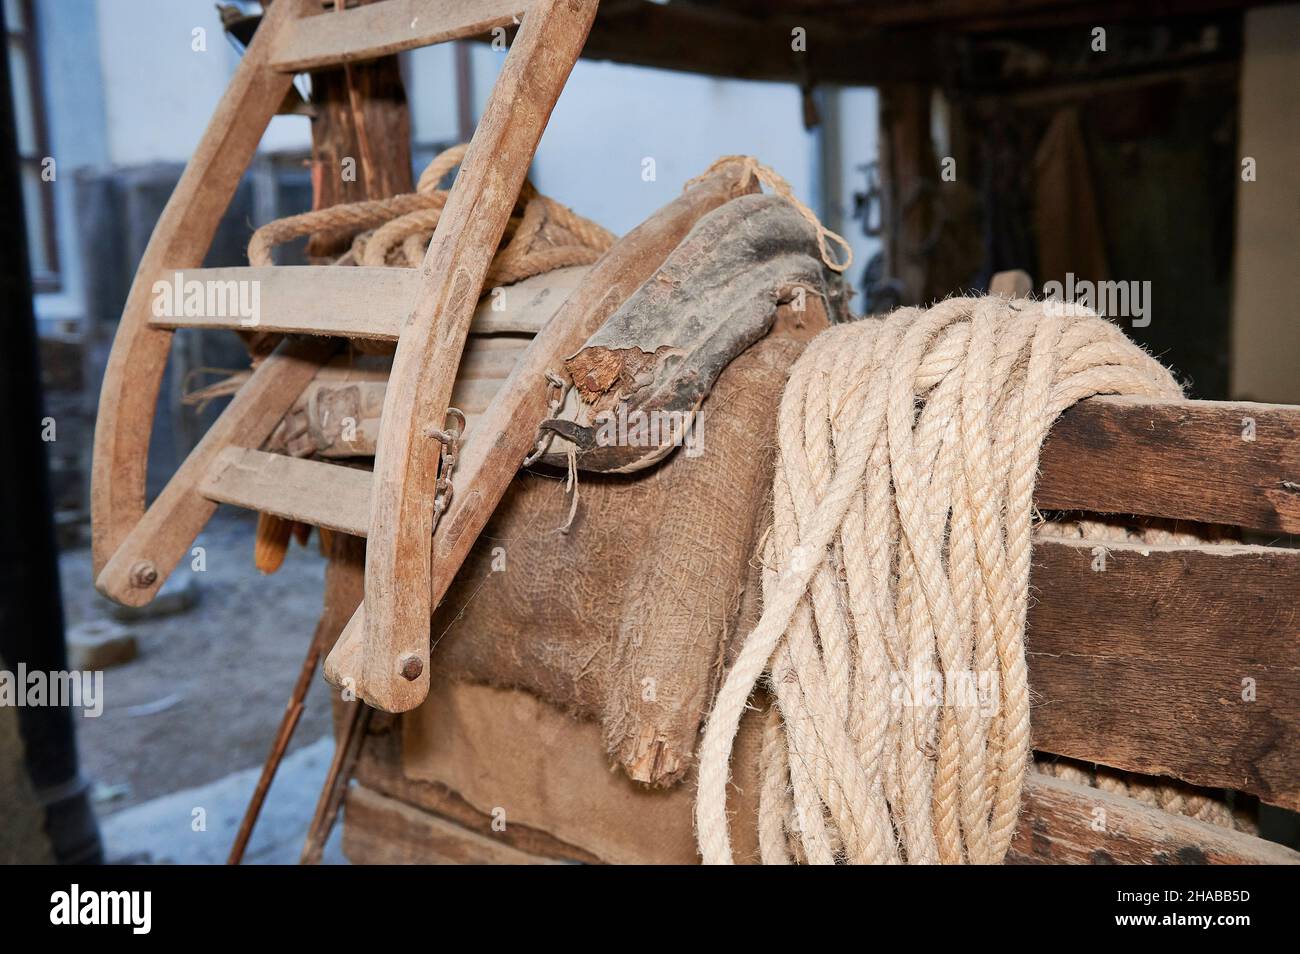 corde de chanvre enroulée sur de vieilles planches en bois dans un intérieur de ferme Banque D'Images